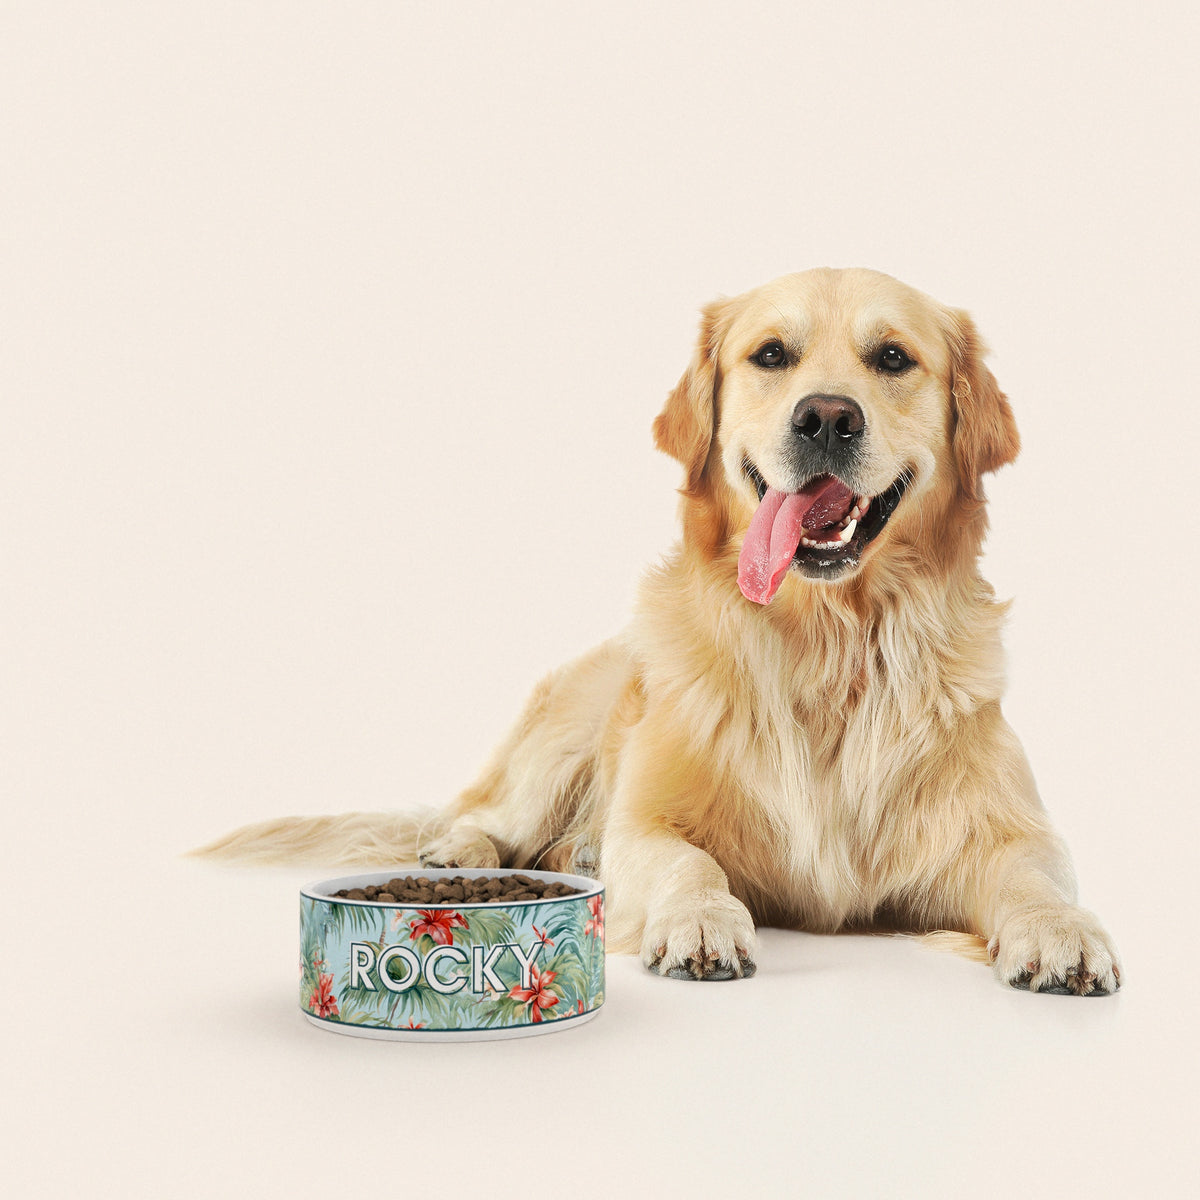 Un golden retriever assis à côté d'un bol pour chien au motif Hawaï personnalisé avec le nom ROCKY